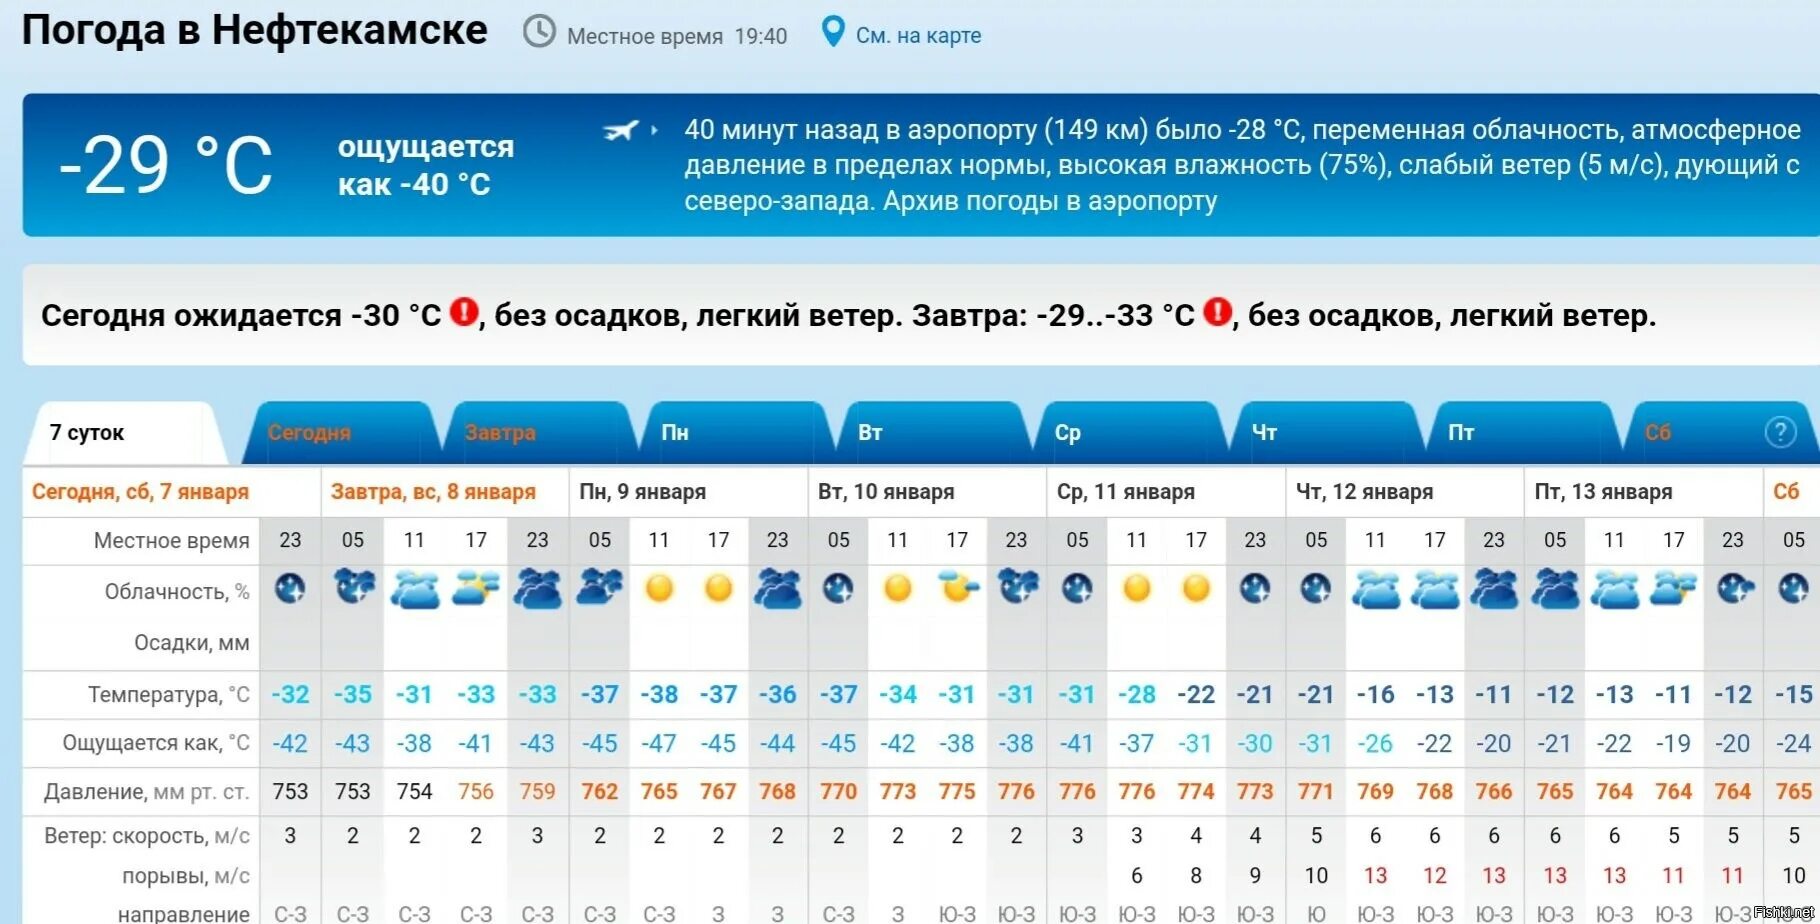 Погода рп5 спасск приморский край. Якутия температура. Якутск самая низкая температура. Самая низкая температура в яку. Якутск температура.